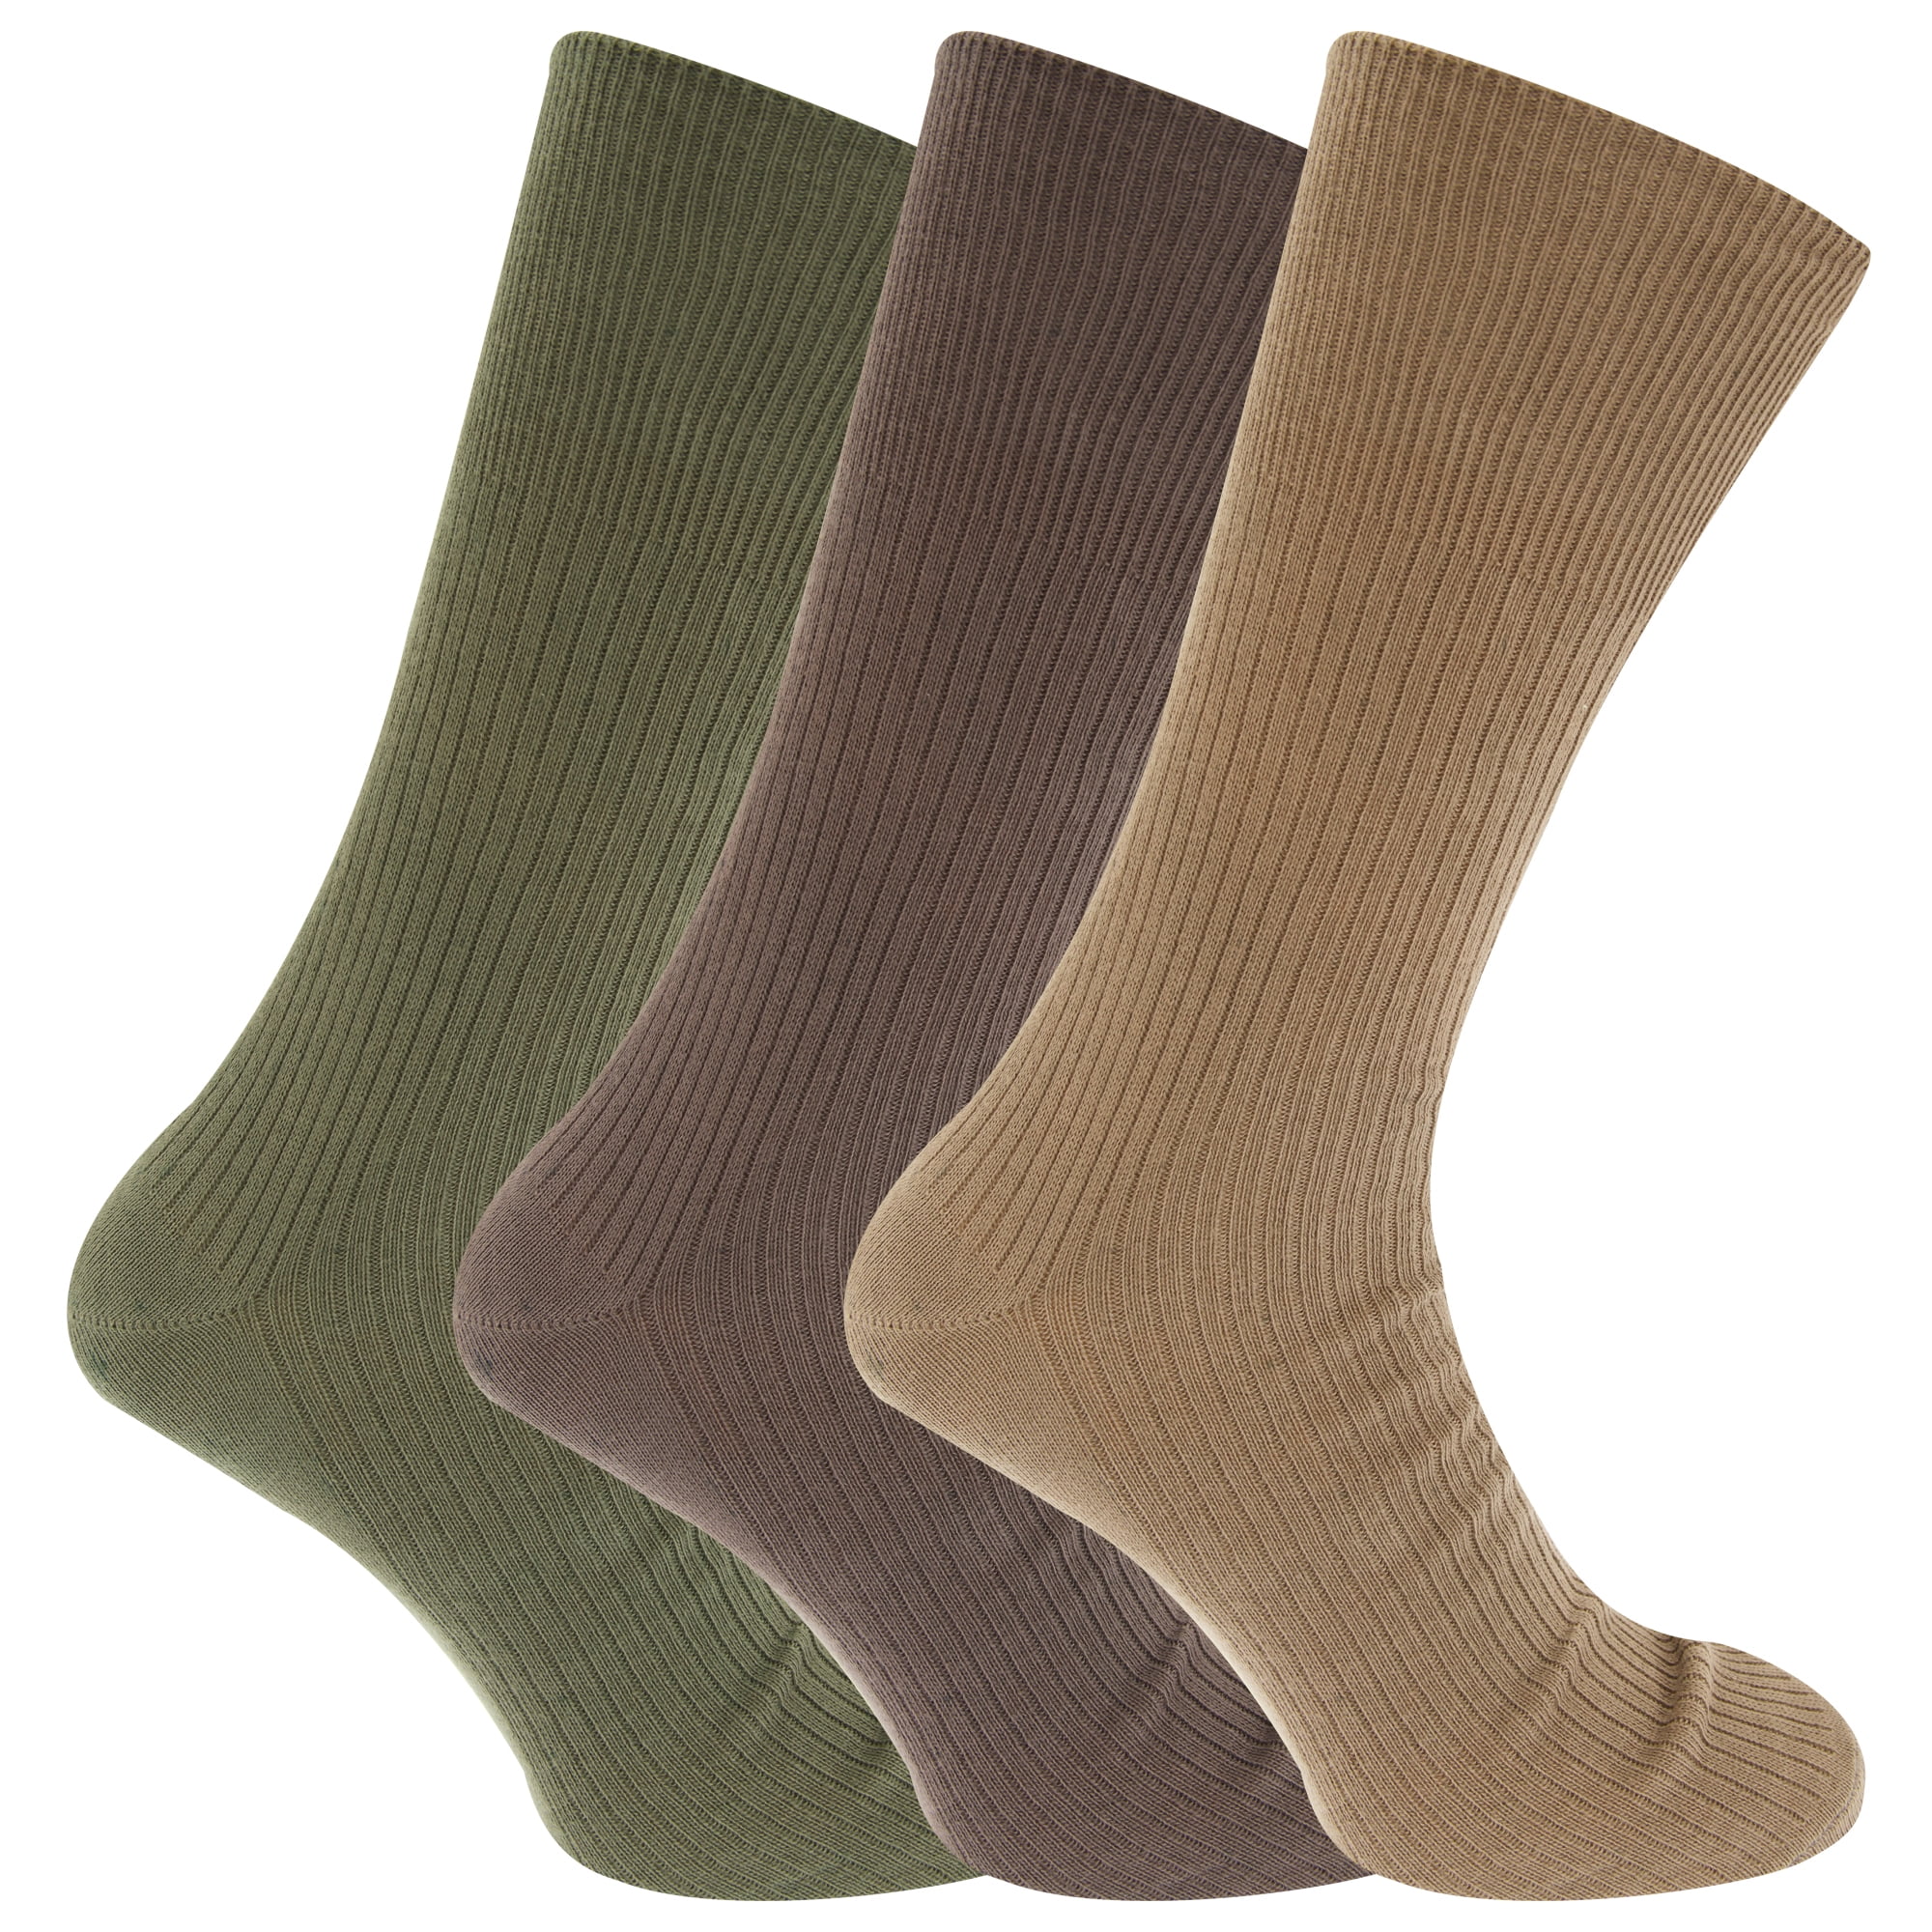 Socks Mens Socks Big Foot Thermal Socks Wide Top Cotton Blend Diabetic Socks 